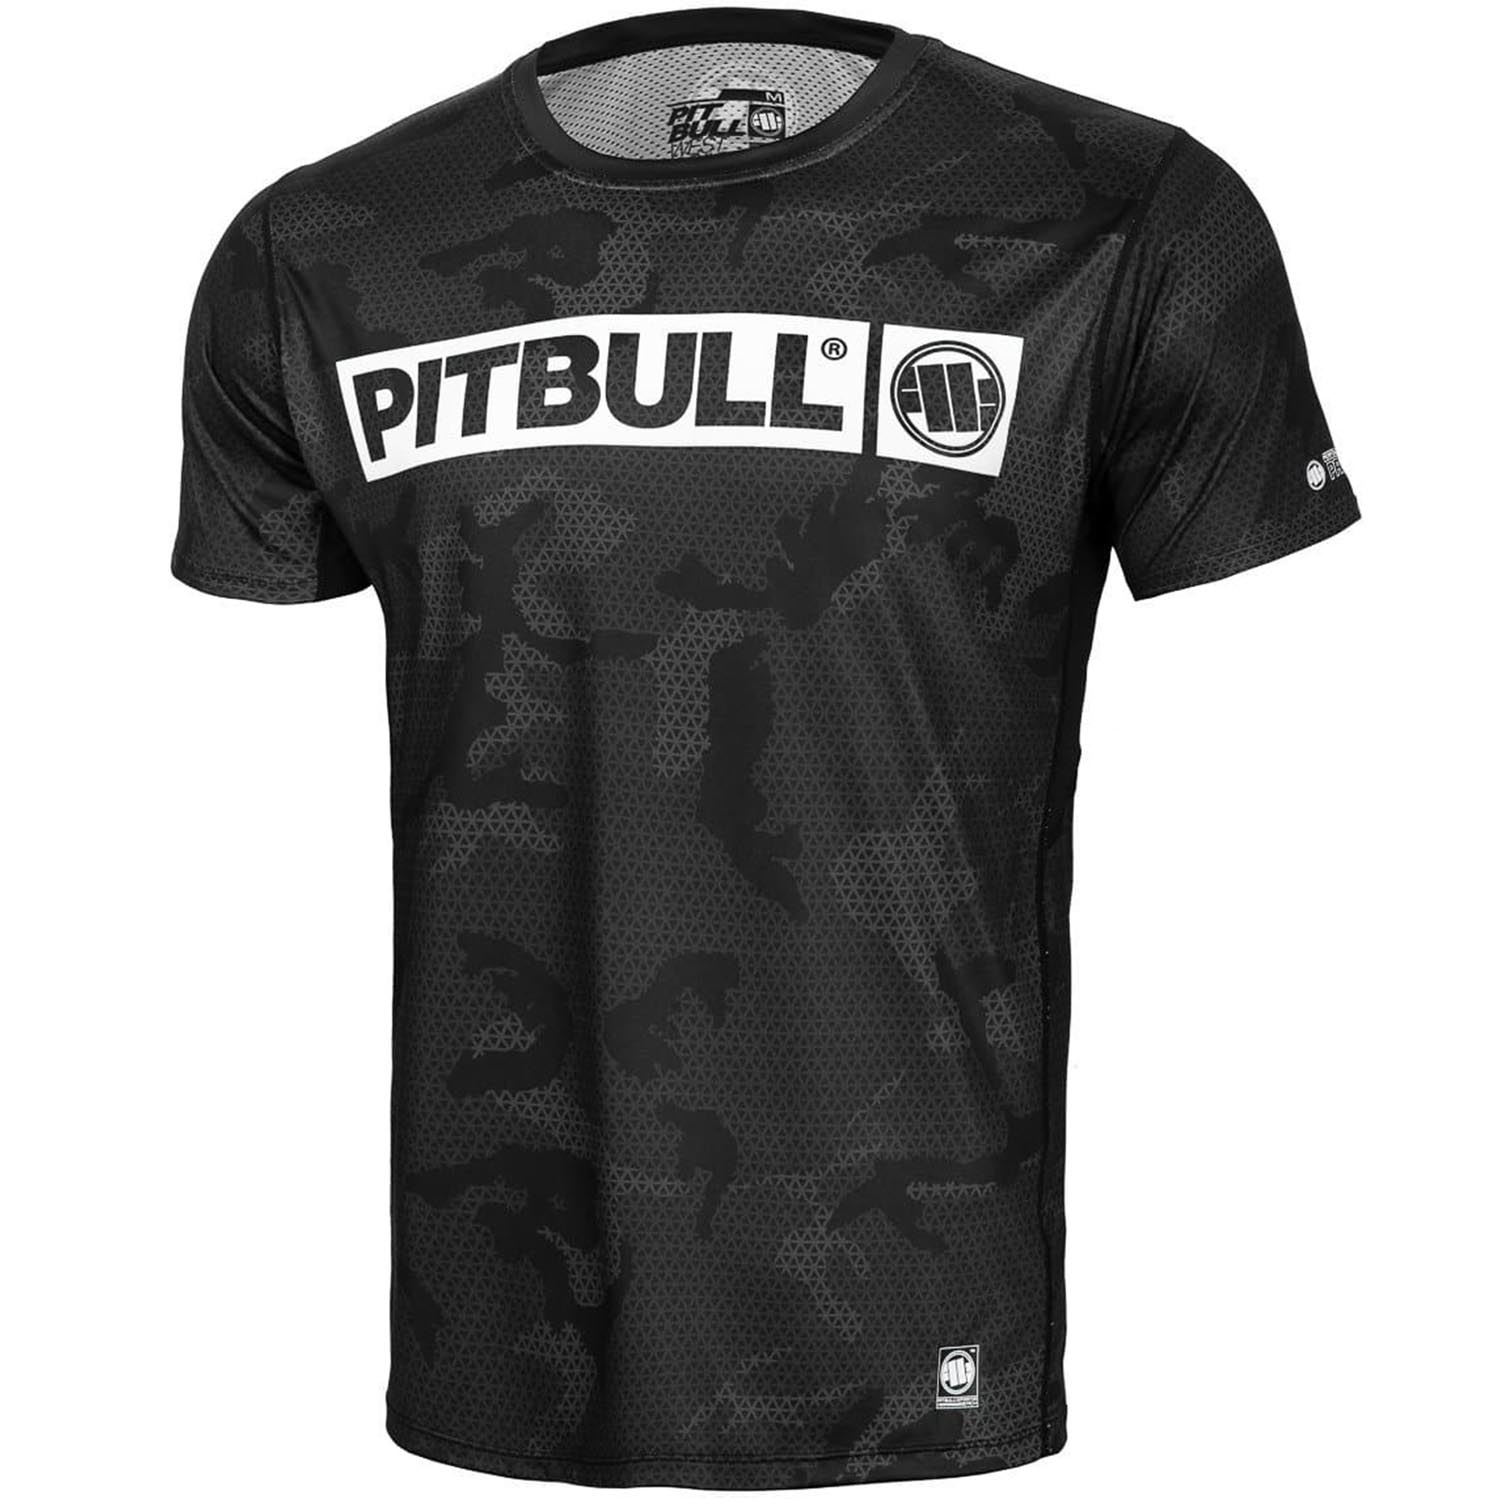 Pit Bull West Coast Fitness Shirt, Mesh Net Hilltop, camo-schwarz